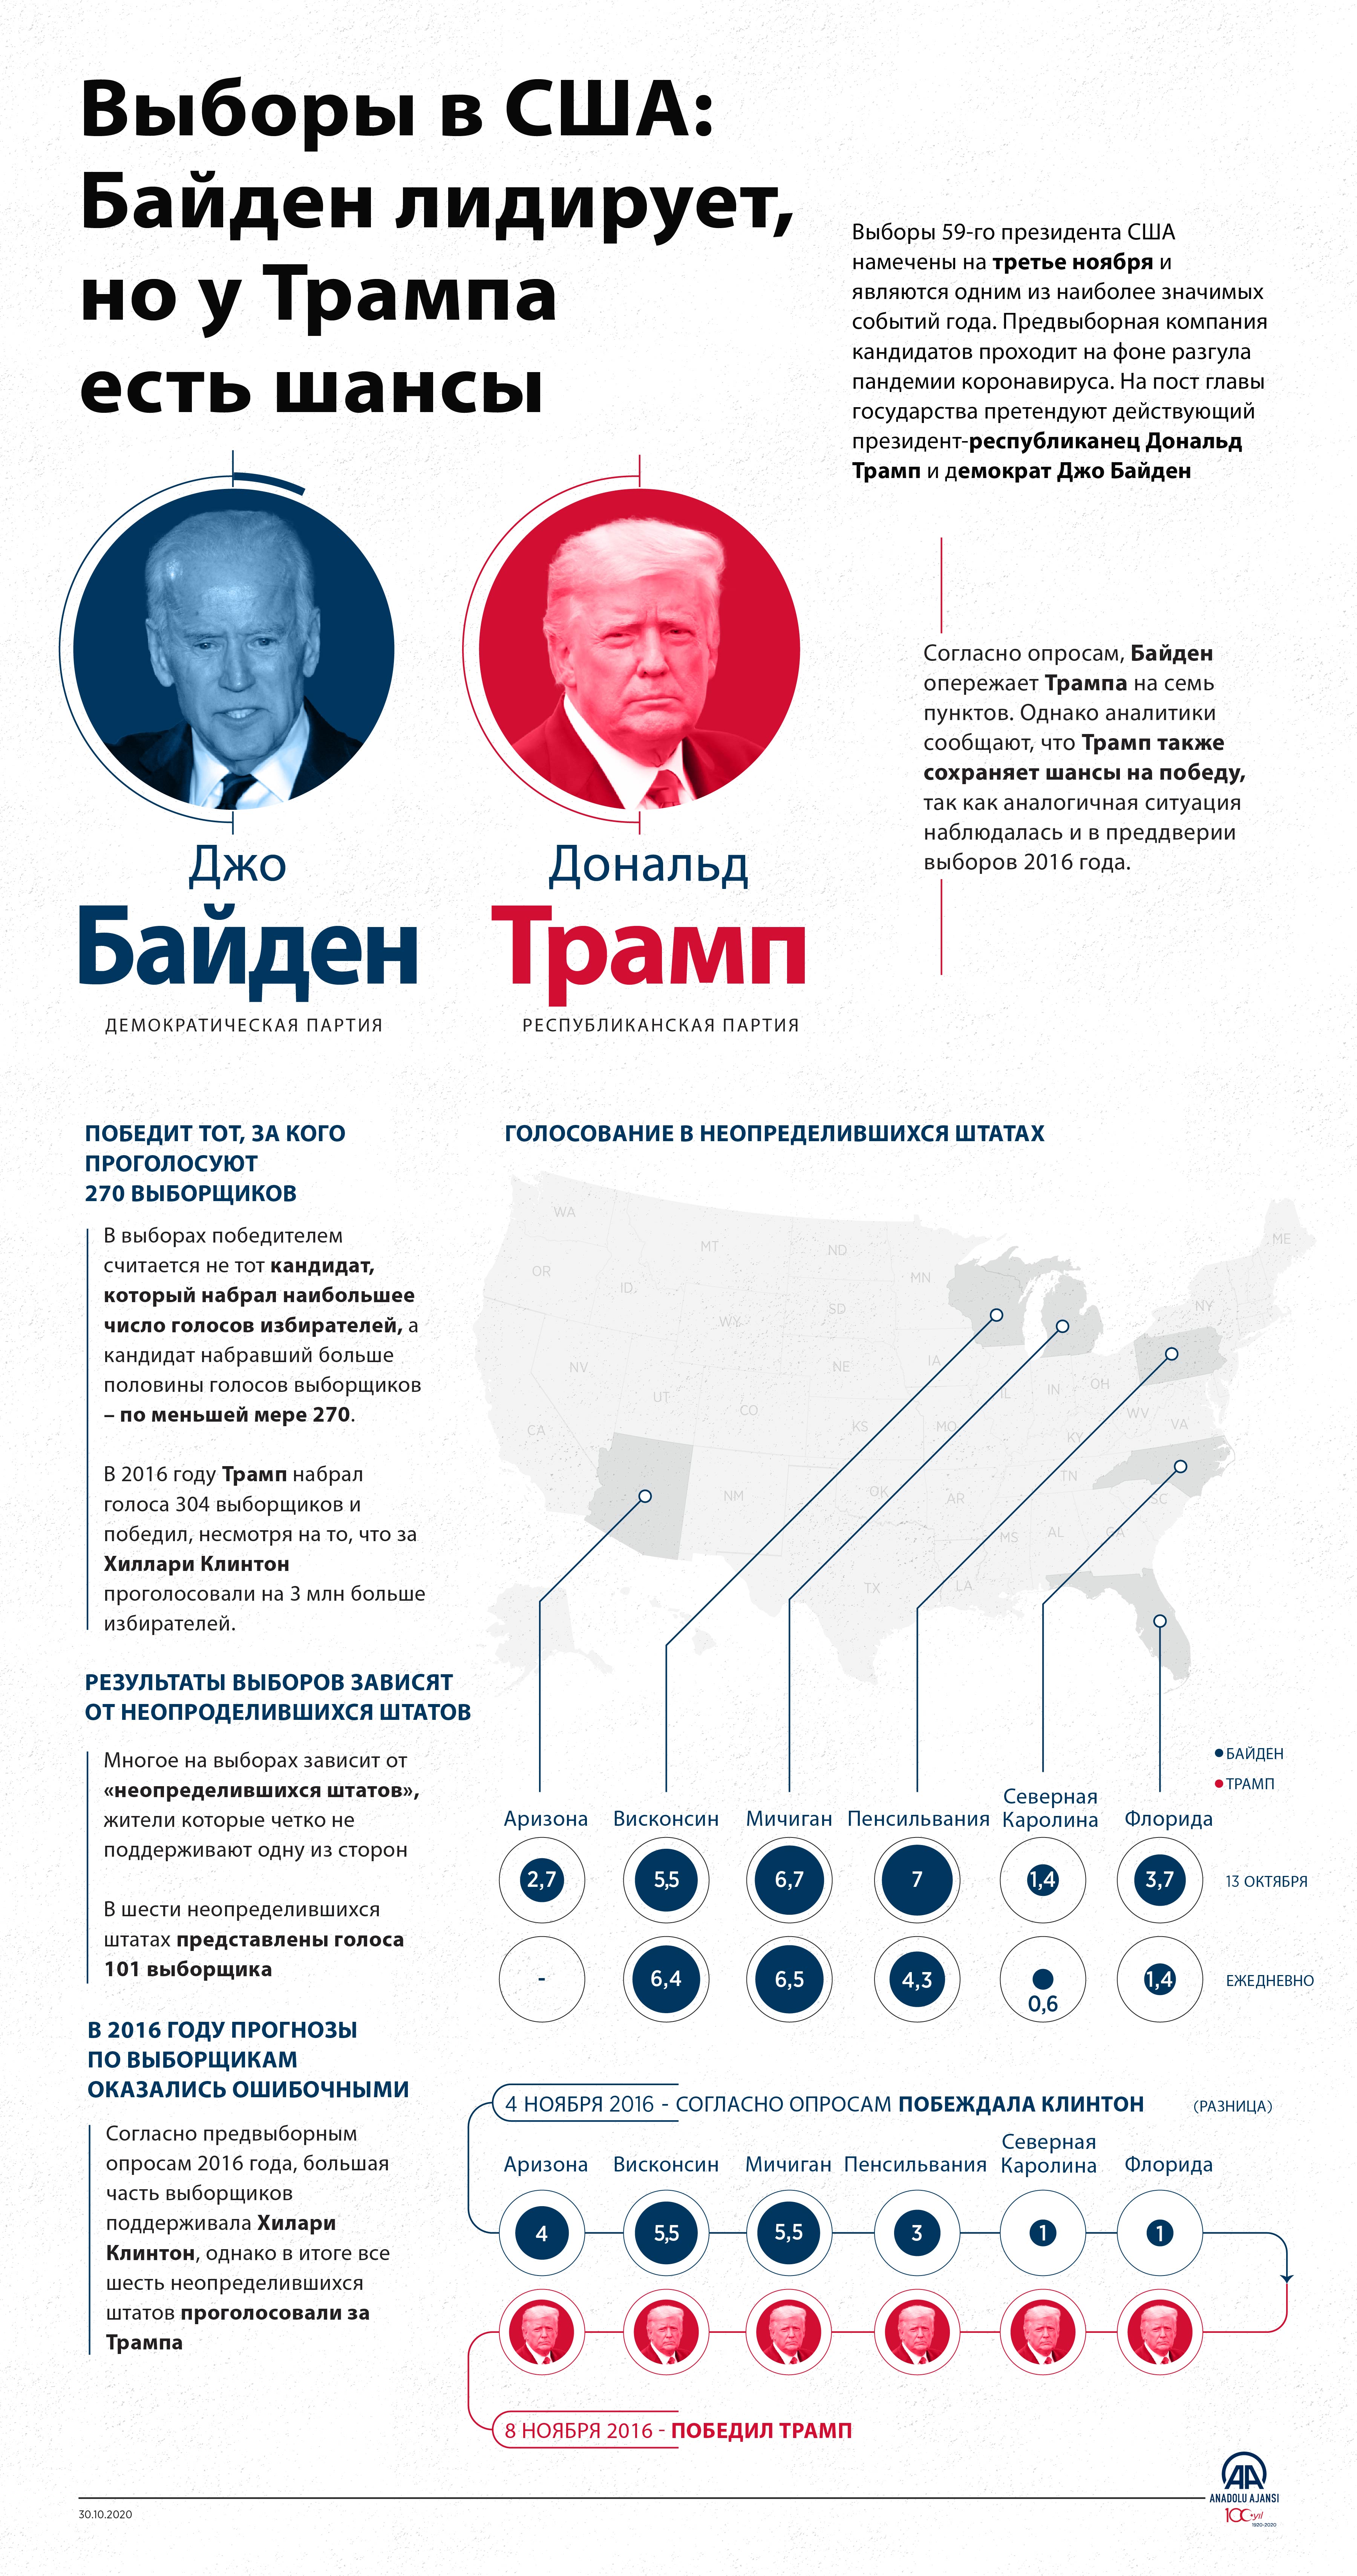 Можно ли досрочно проголосовать на выборах президента. Голосование за президента США В 2020. Выборы президента США В 2016 году. Выборы президента в 2016 году. Выборы в США инфографика.